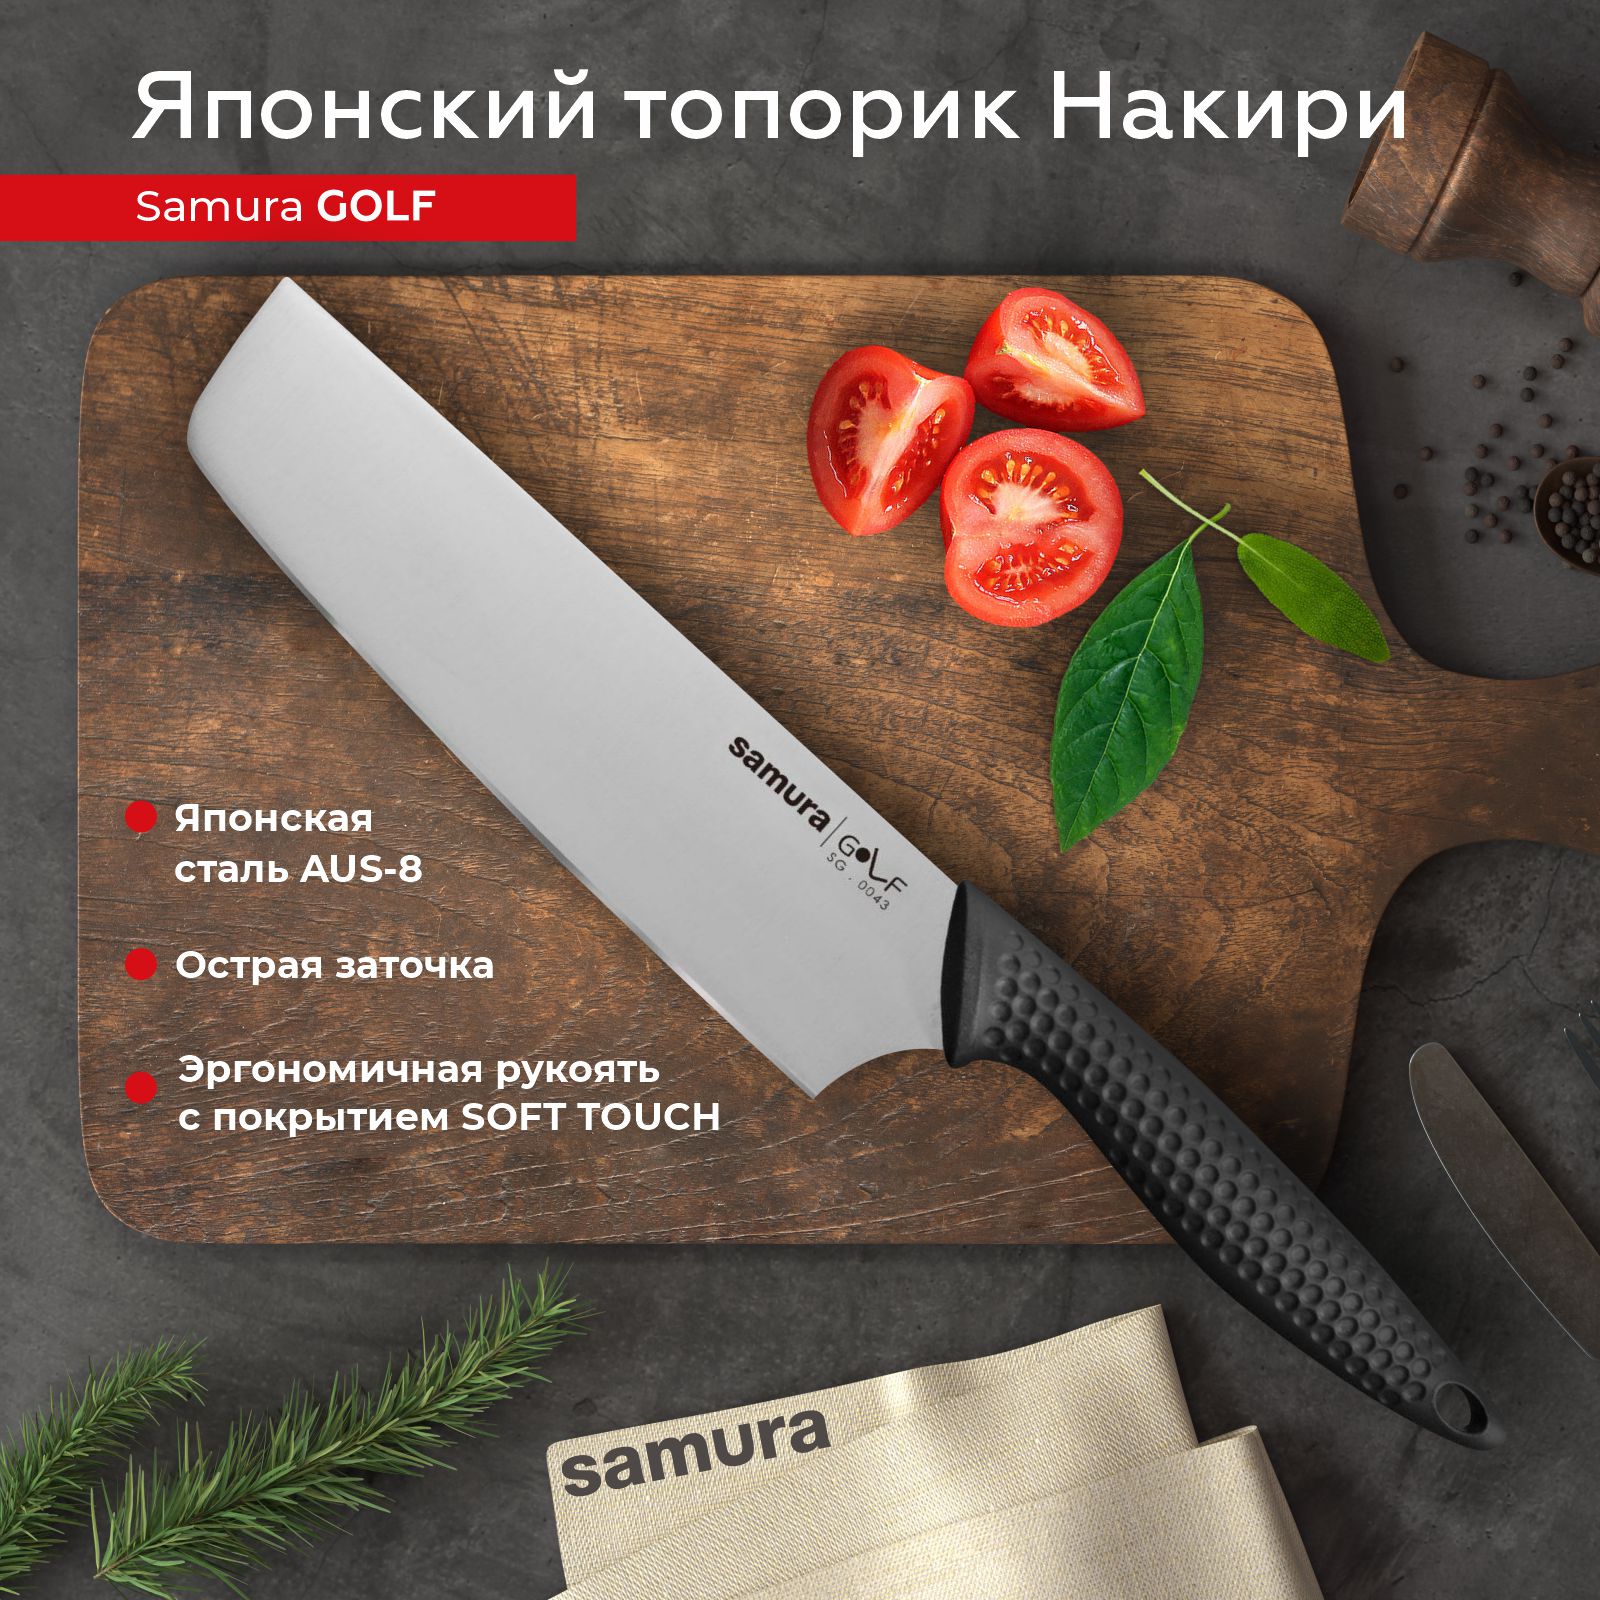 Нож кухонный поварской Samura Golf топорик Накири для шинковки профессиональный SG-0043